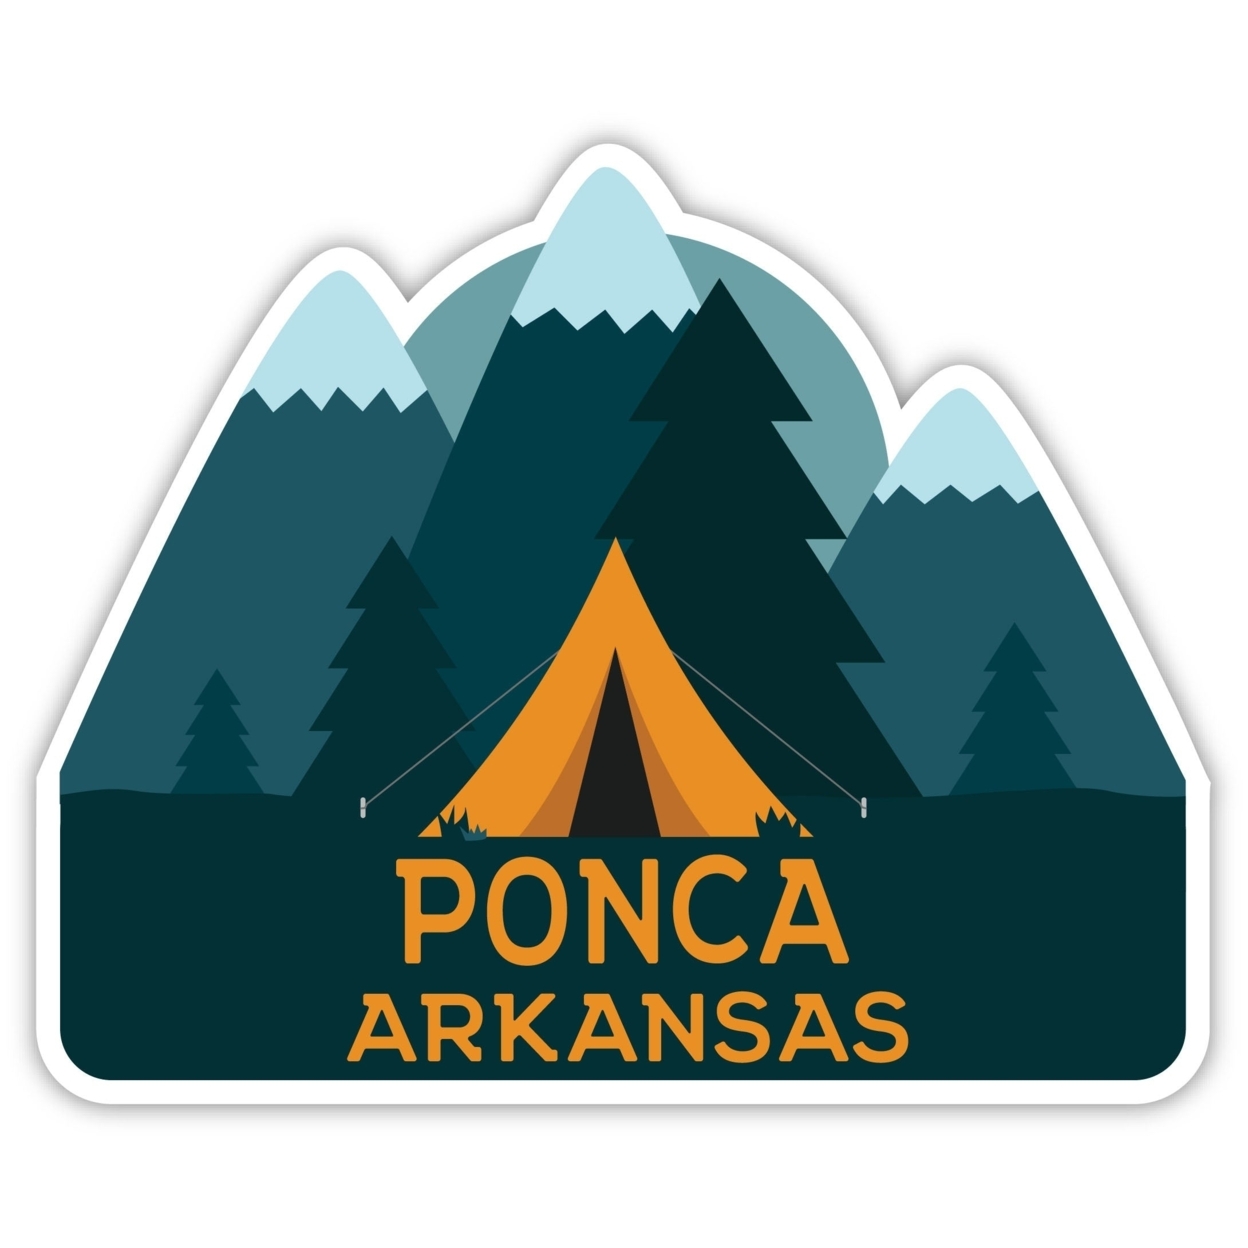 Ponca Arkansas Souvenir Decorative Stickers (Choose Theme And Size) - Single Unit, 4-Inch, Tent